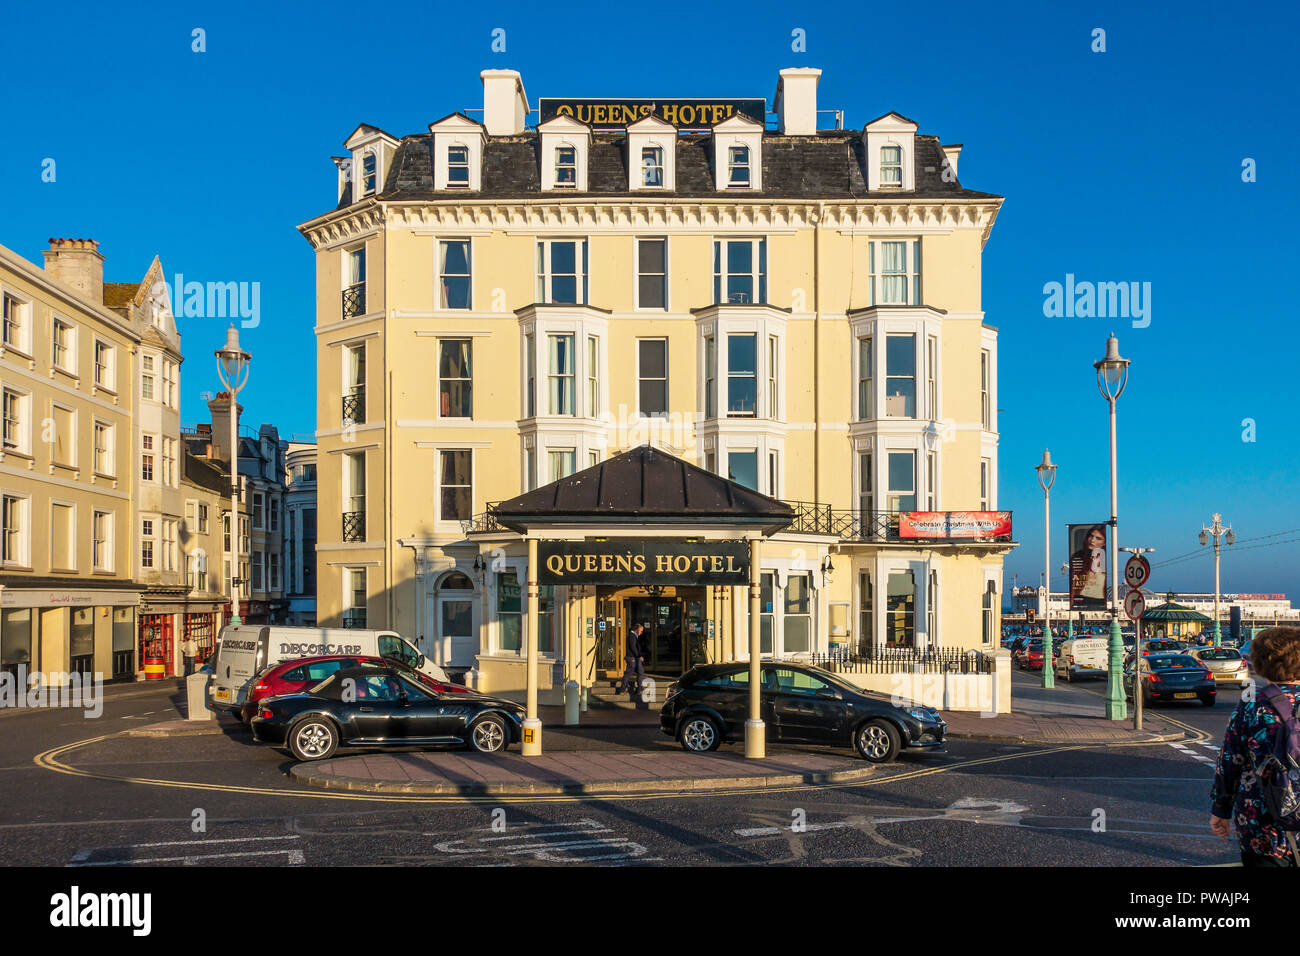 Queens Hotel,Brighton,Sussex,England,UK Stock Photo